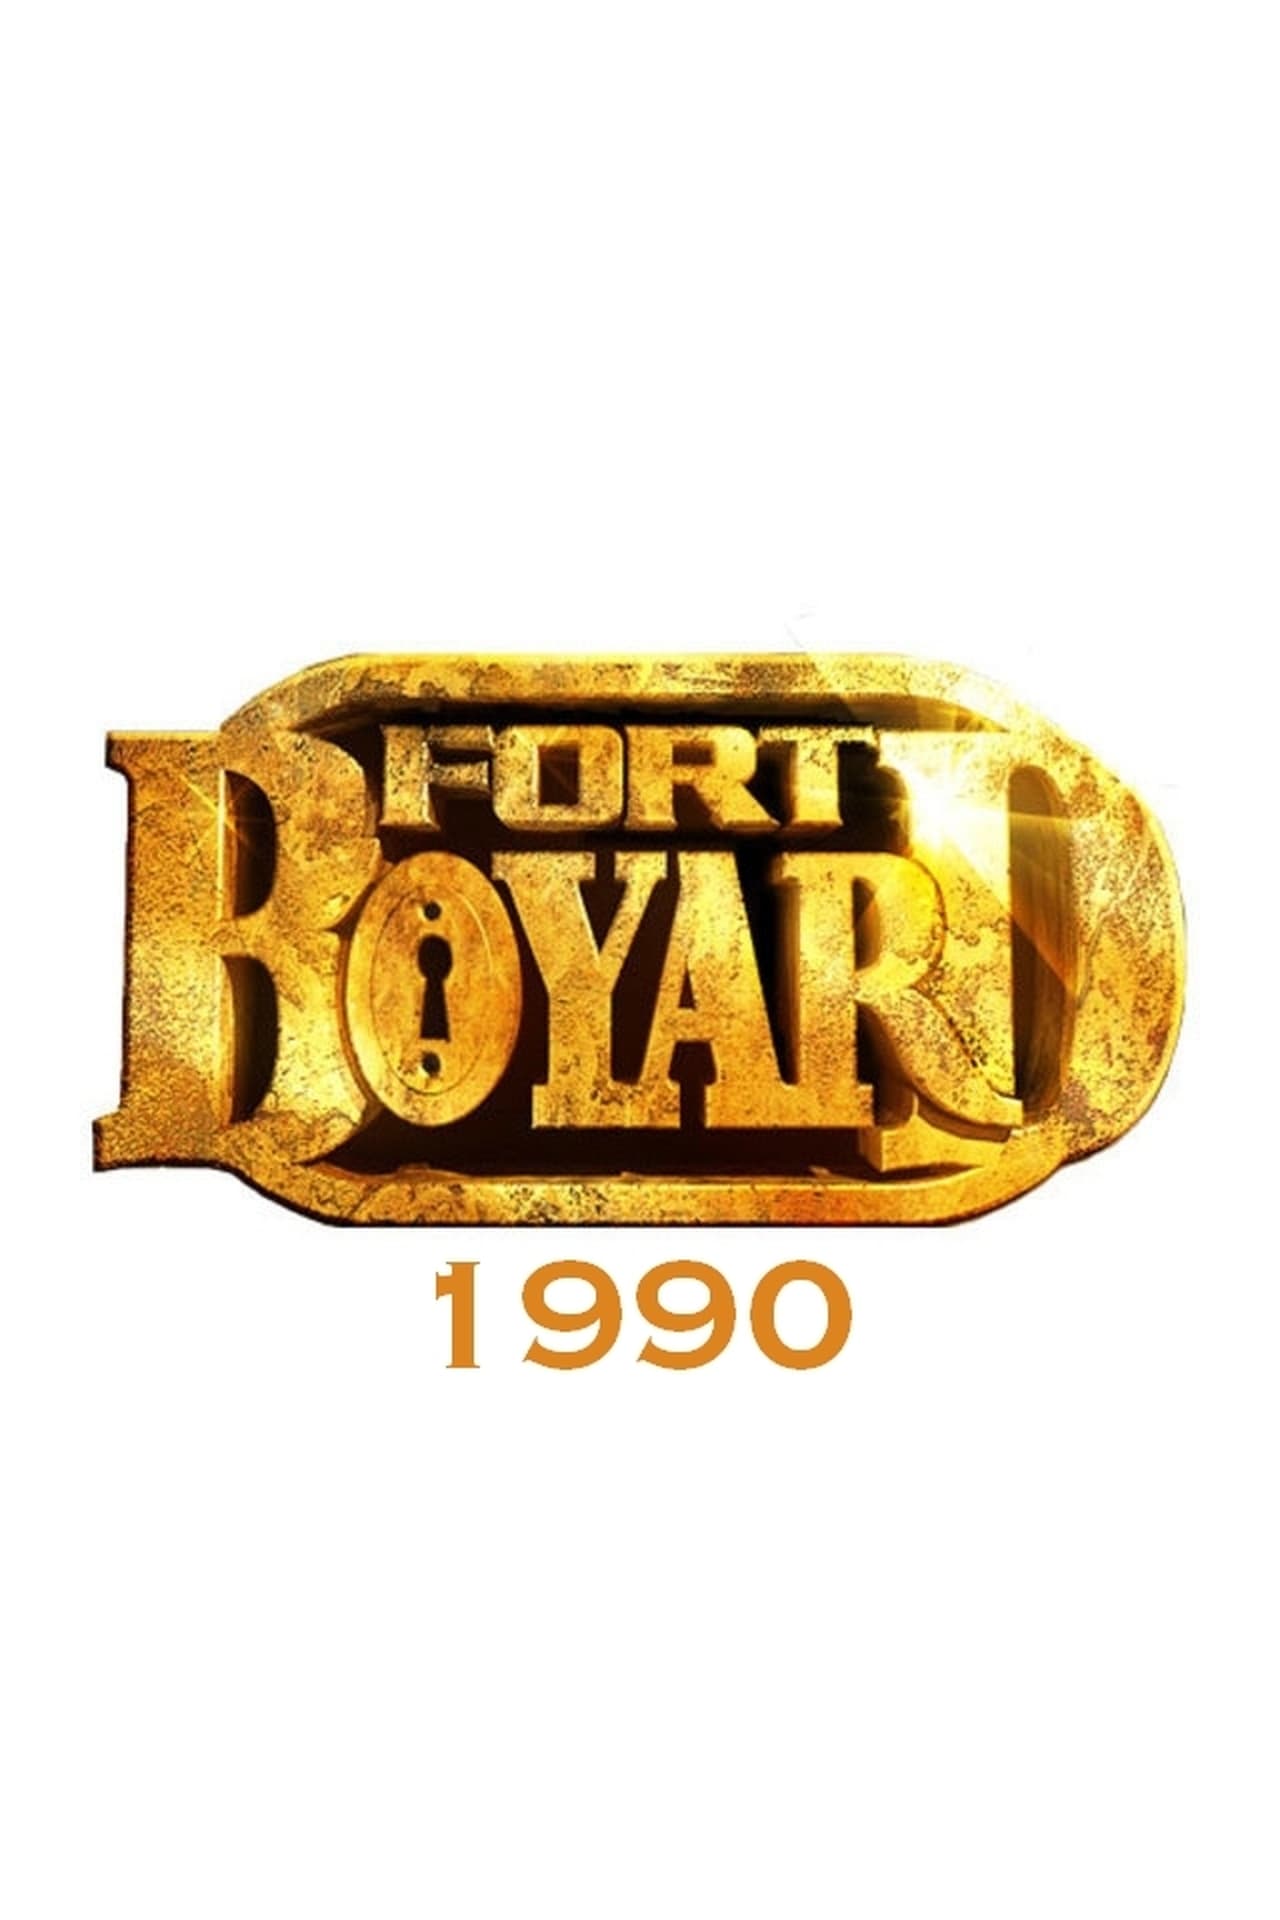 Fort Boyard Season 1